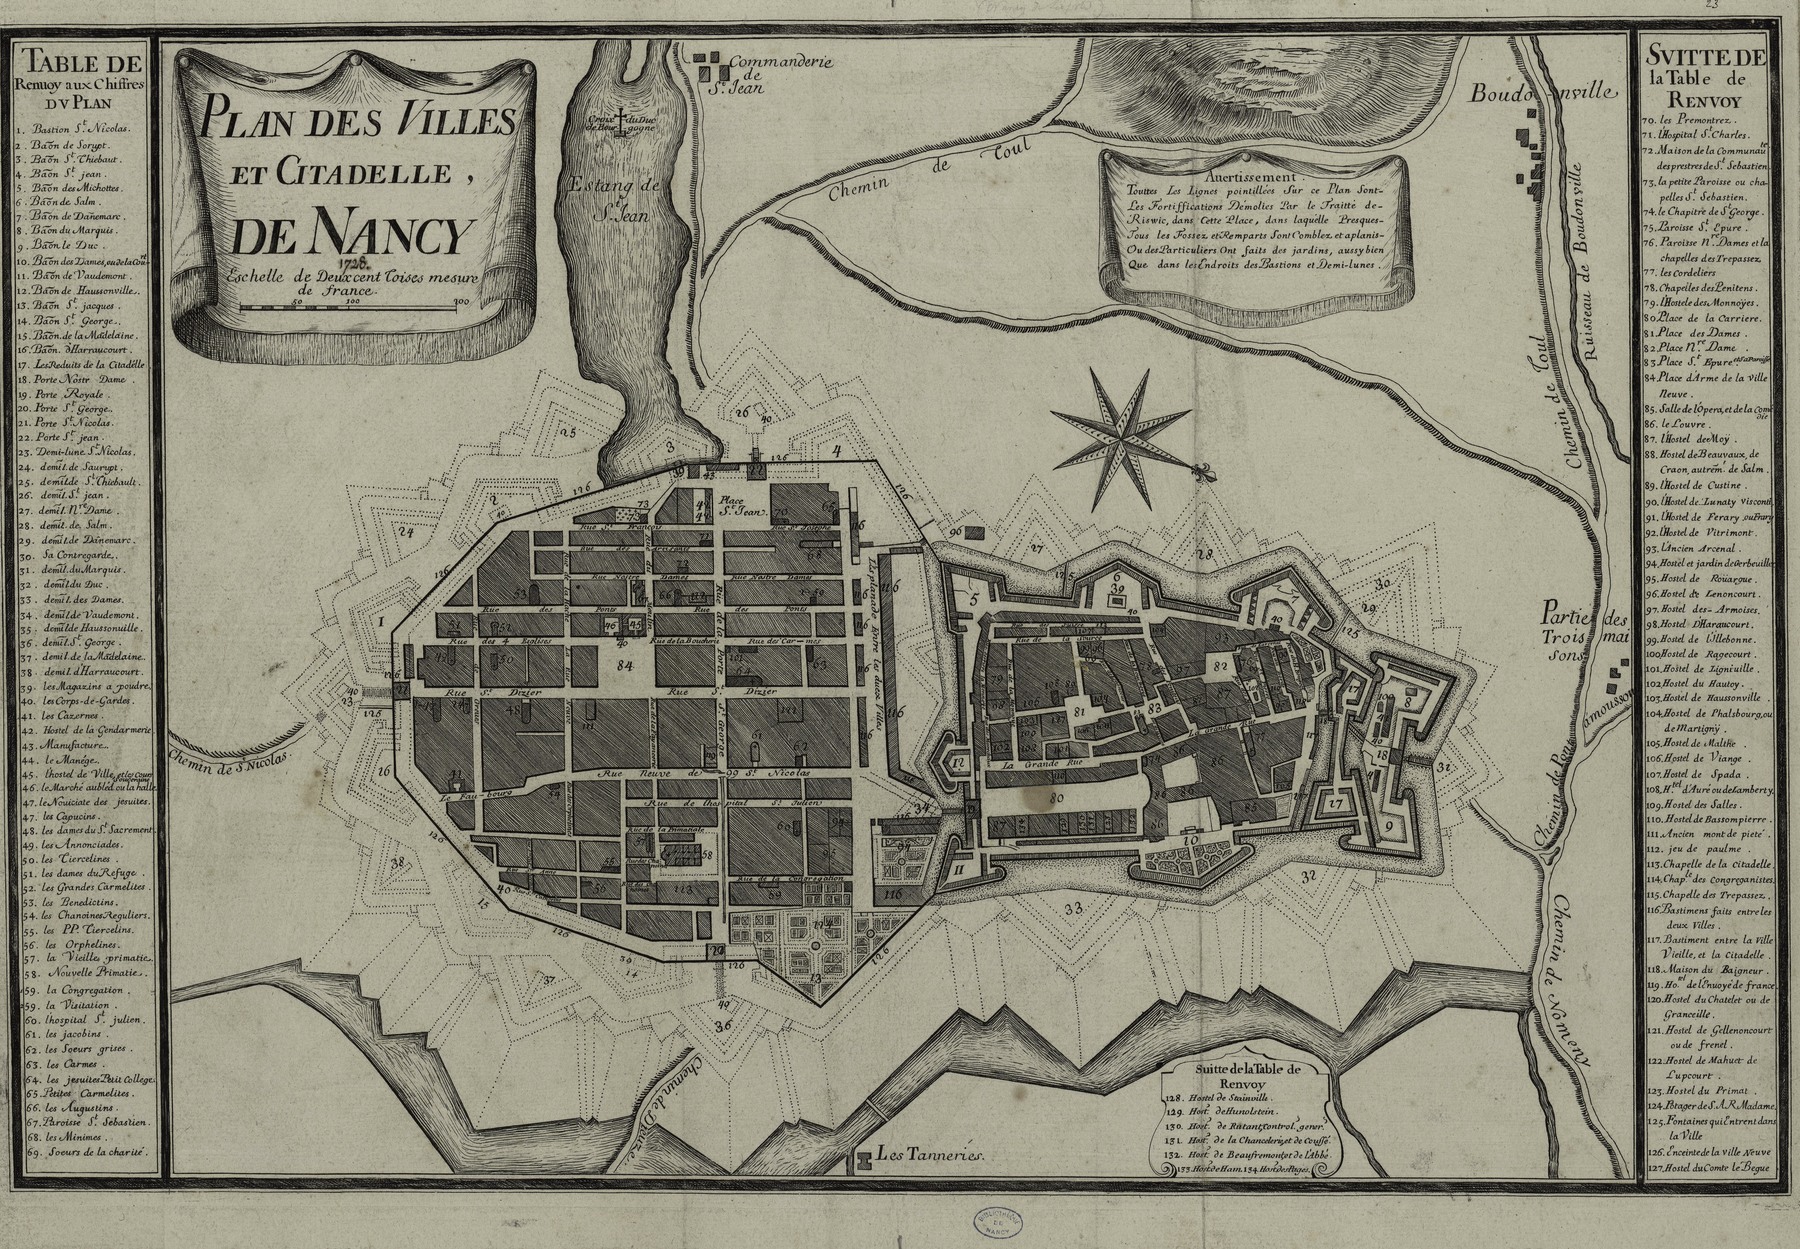 Contenu du Plan des villes et citadelle de Nancy (1728)